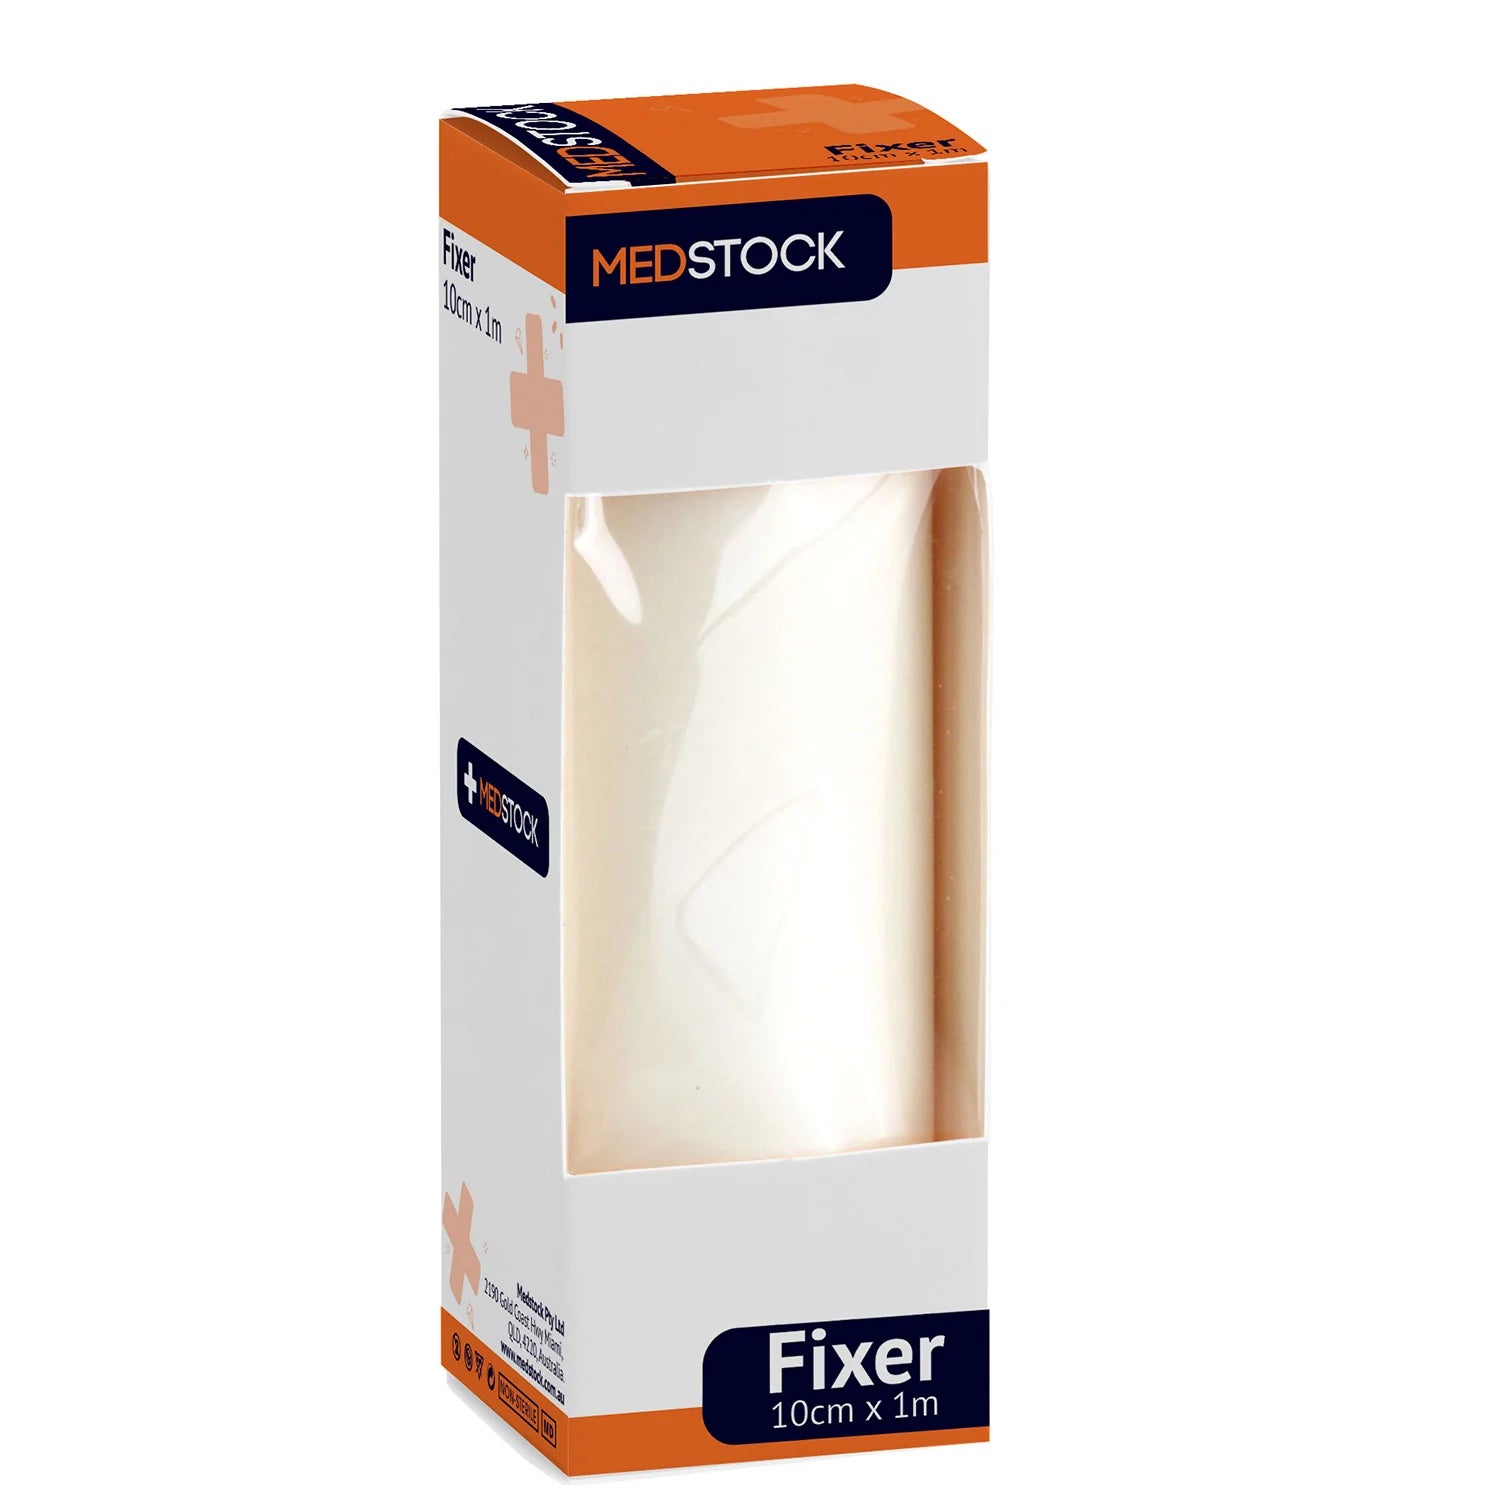 Medstock White Fixer Roll -Box of 15